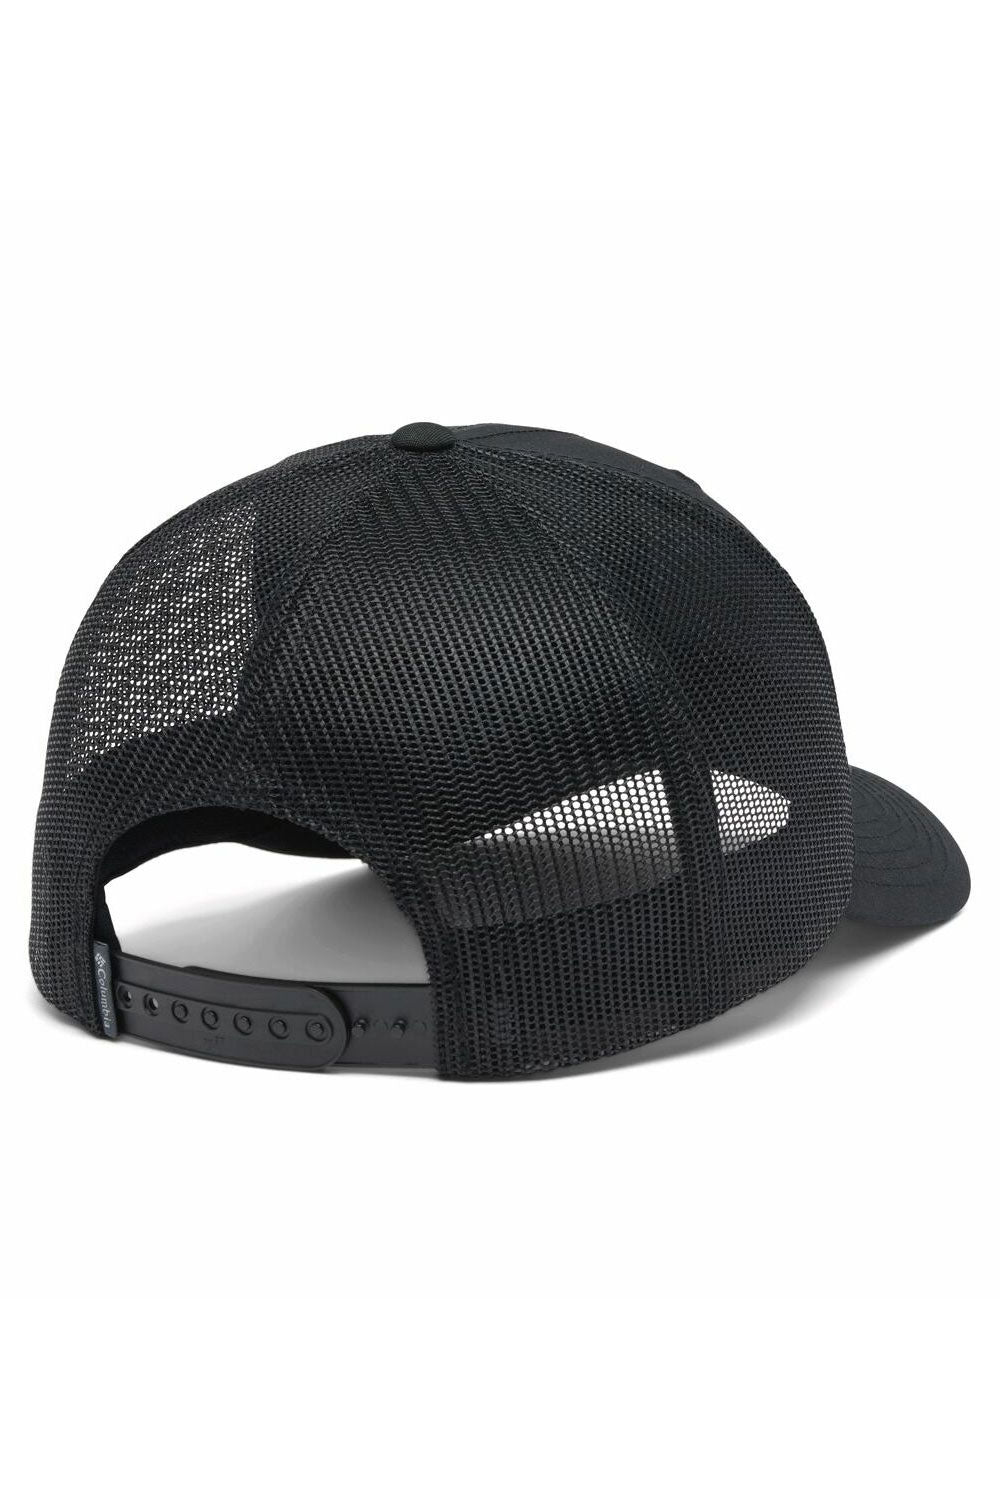 קולומביה כובע מצחייה Snap Back בצבע שחור לגברים-Columbia-One size-נאקו